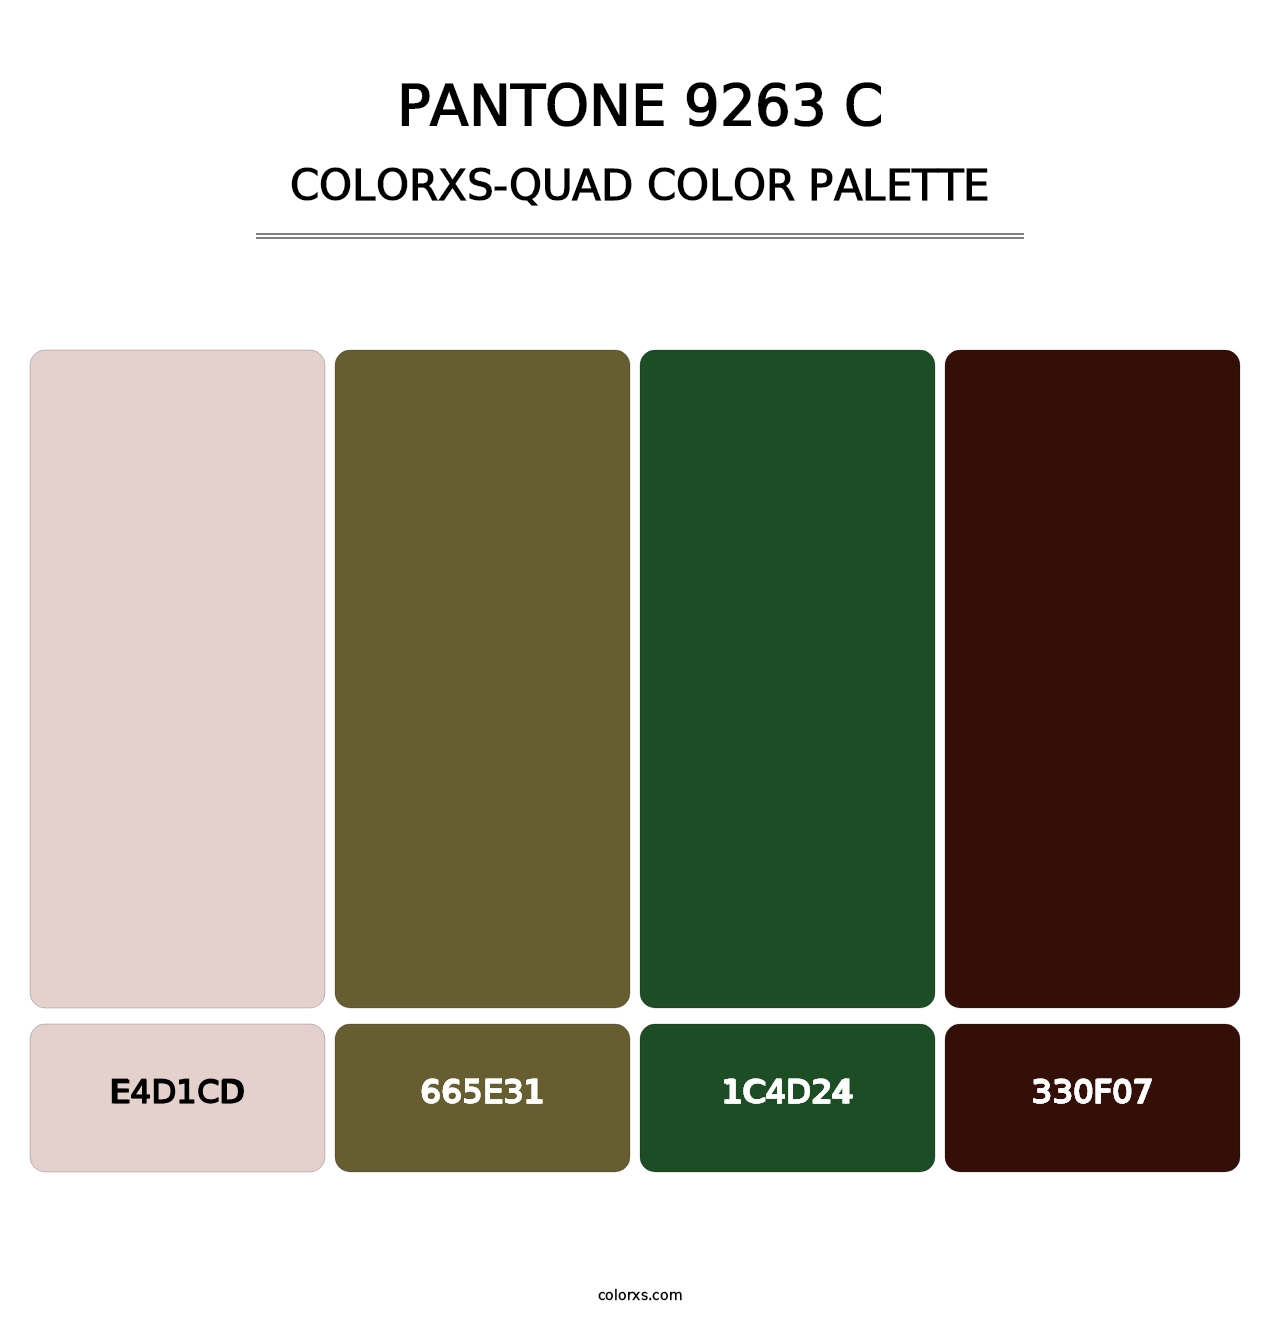 PANTONE 9263 C - Colorxs Quad Palette